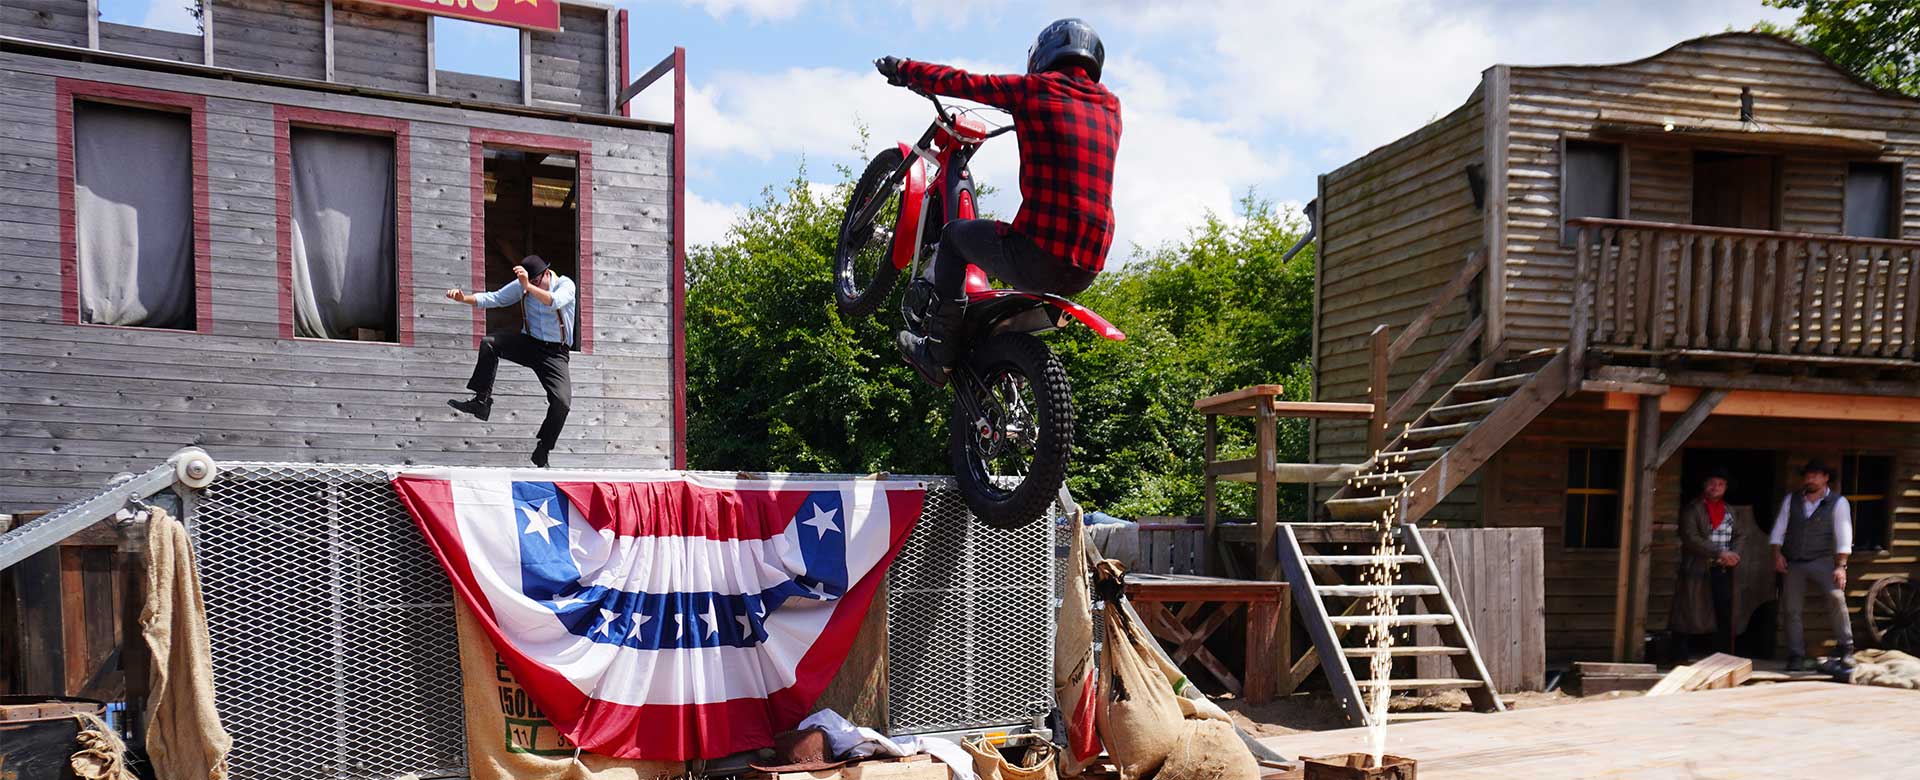 Das Highlight der diesjährigen Zugshow: Ein Motorradfahrer zeigt seine ausgefallenen Stunts im Showset.